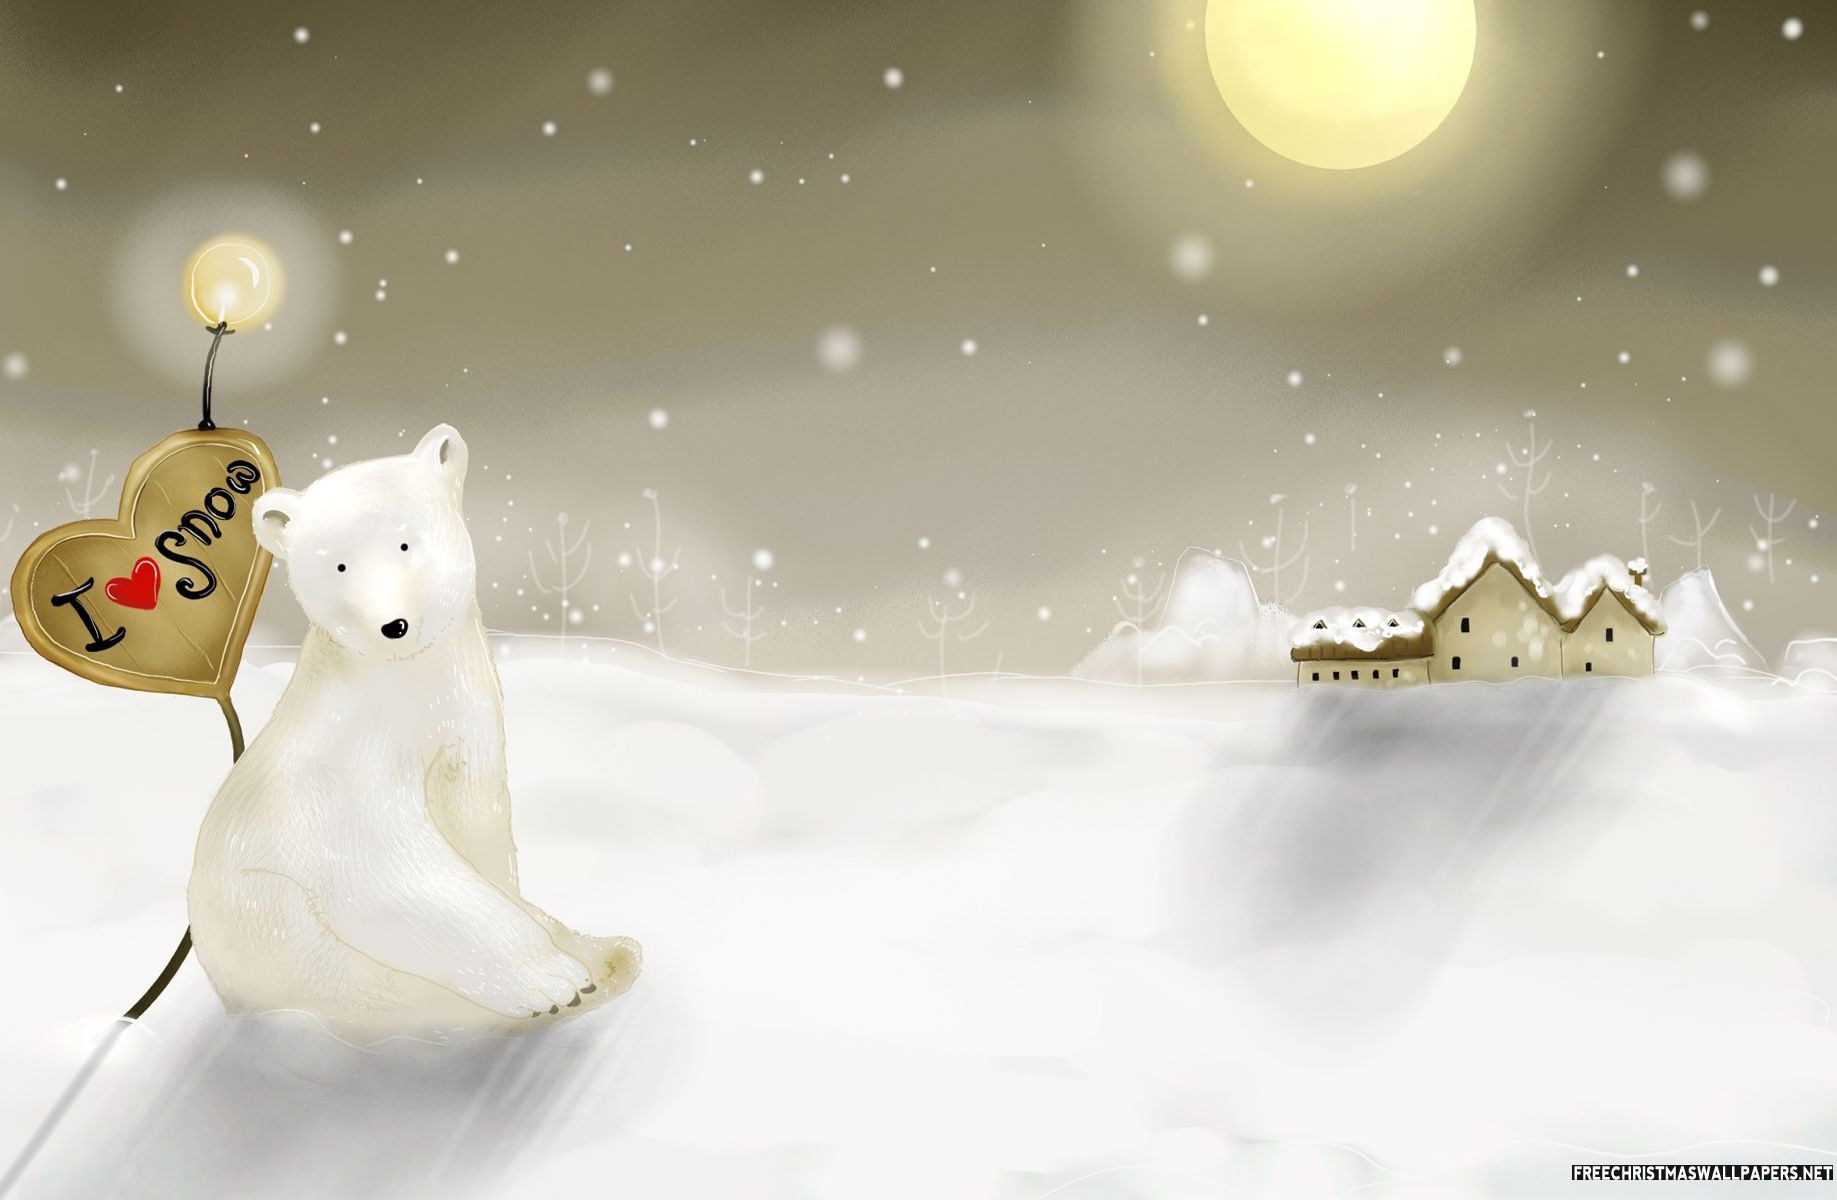 크리스마스 맥 벽지,겨울,눈,눈사람,삽화,크리스마스 이브